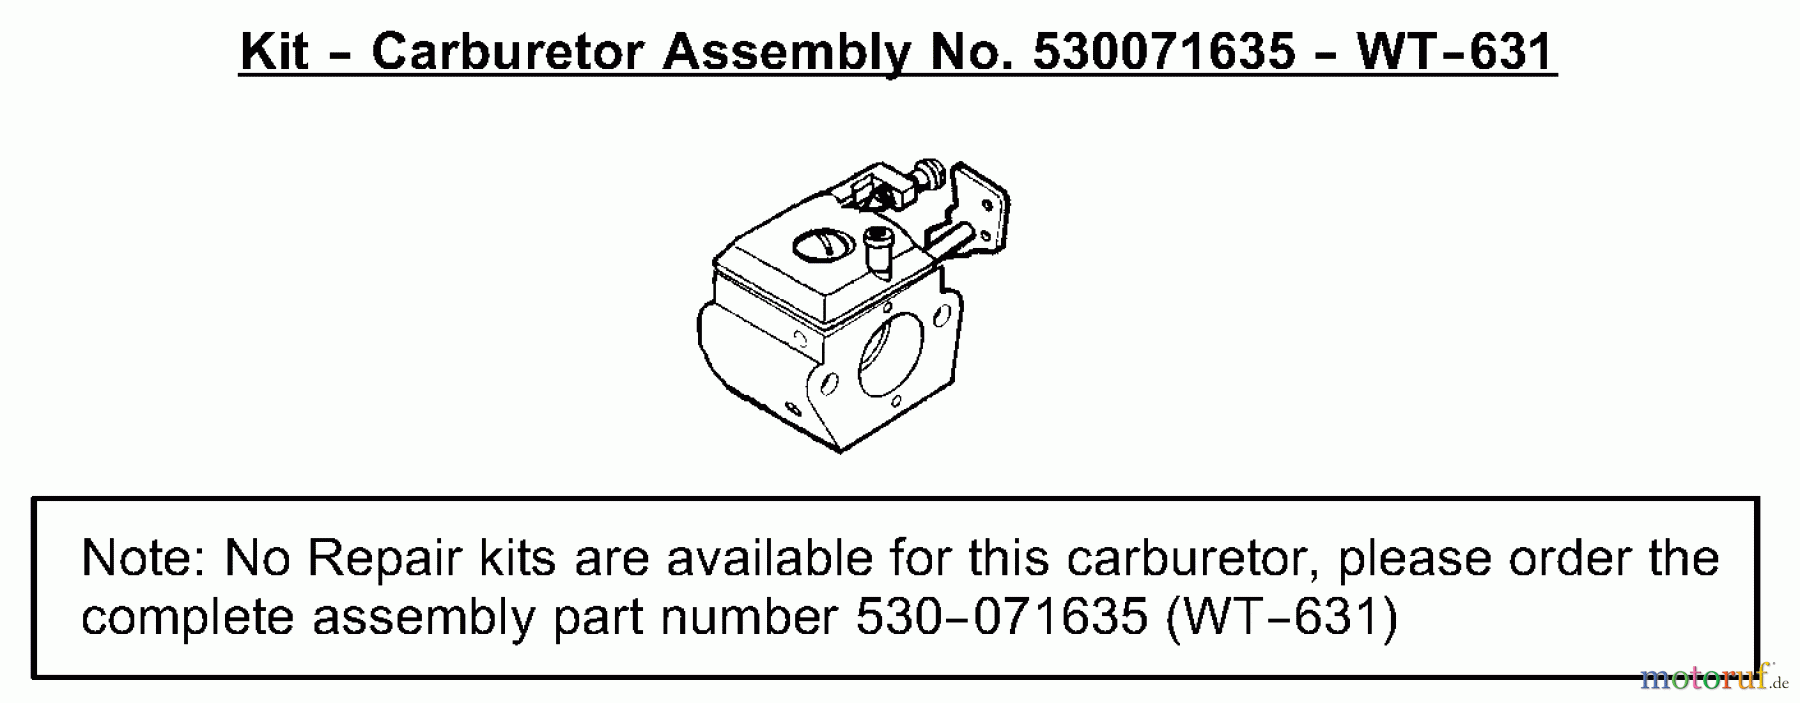  Poulan / Weed Eater Motorsensen, Trimmer SST25 (Type 4) - Weed Eater Featherlite HO String Trimmer Carburetor Assembly (WT-631) P/N 530071635